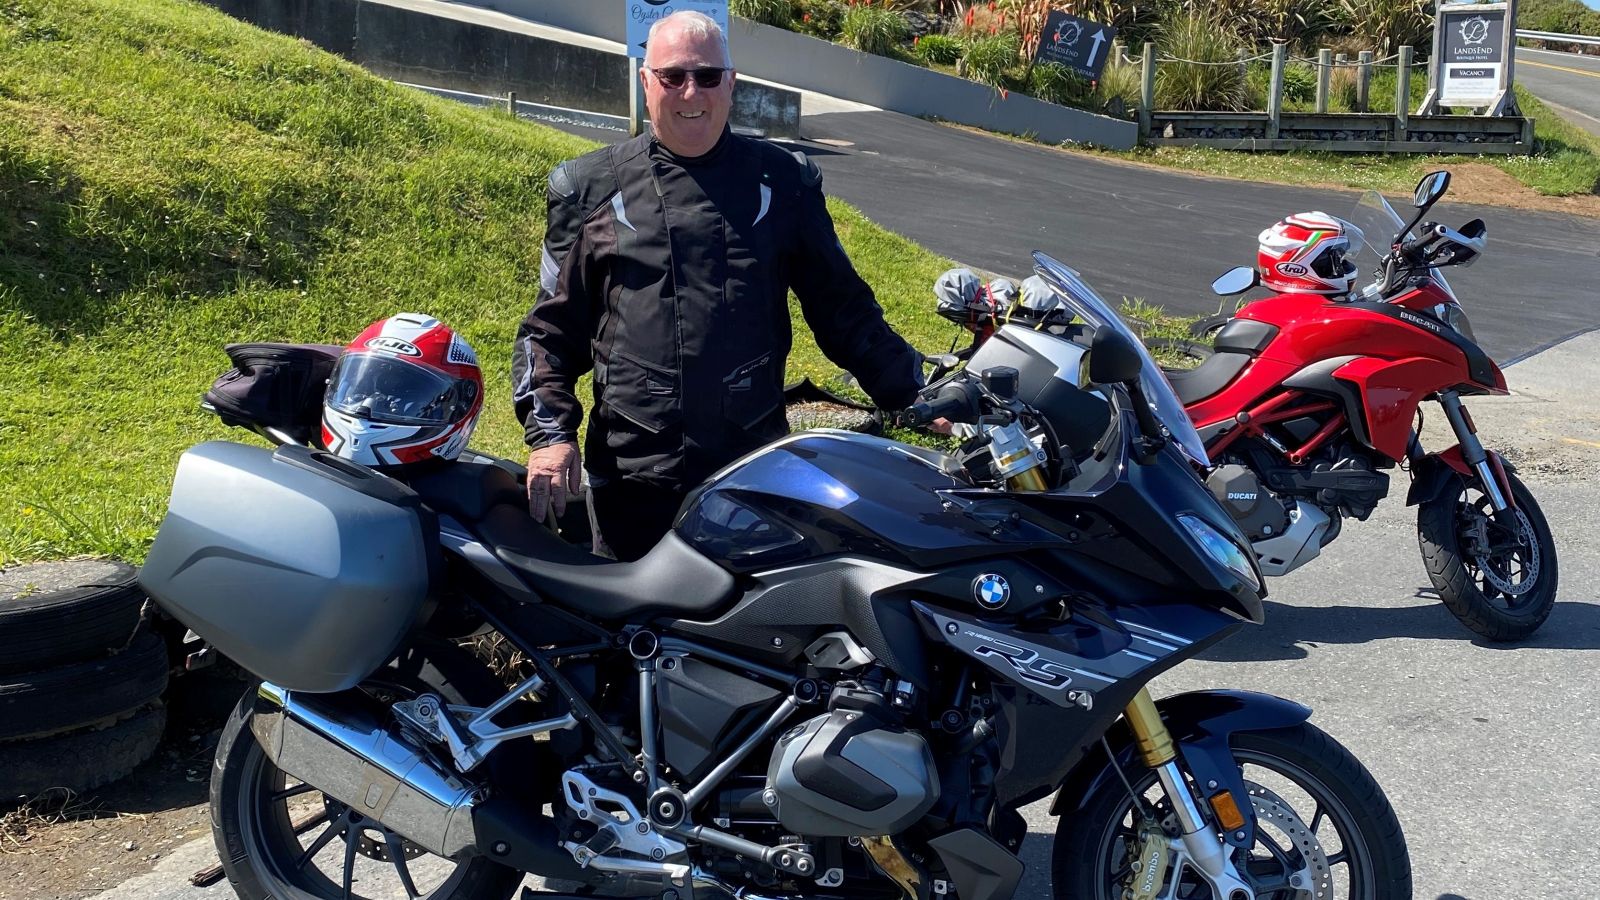 Paul McGilvary in black motorcycle clothing standing behind a black motorcycle